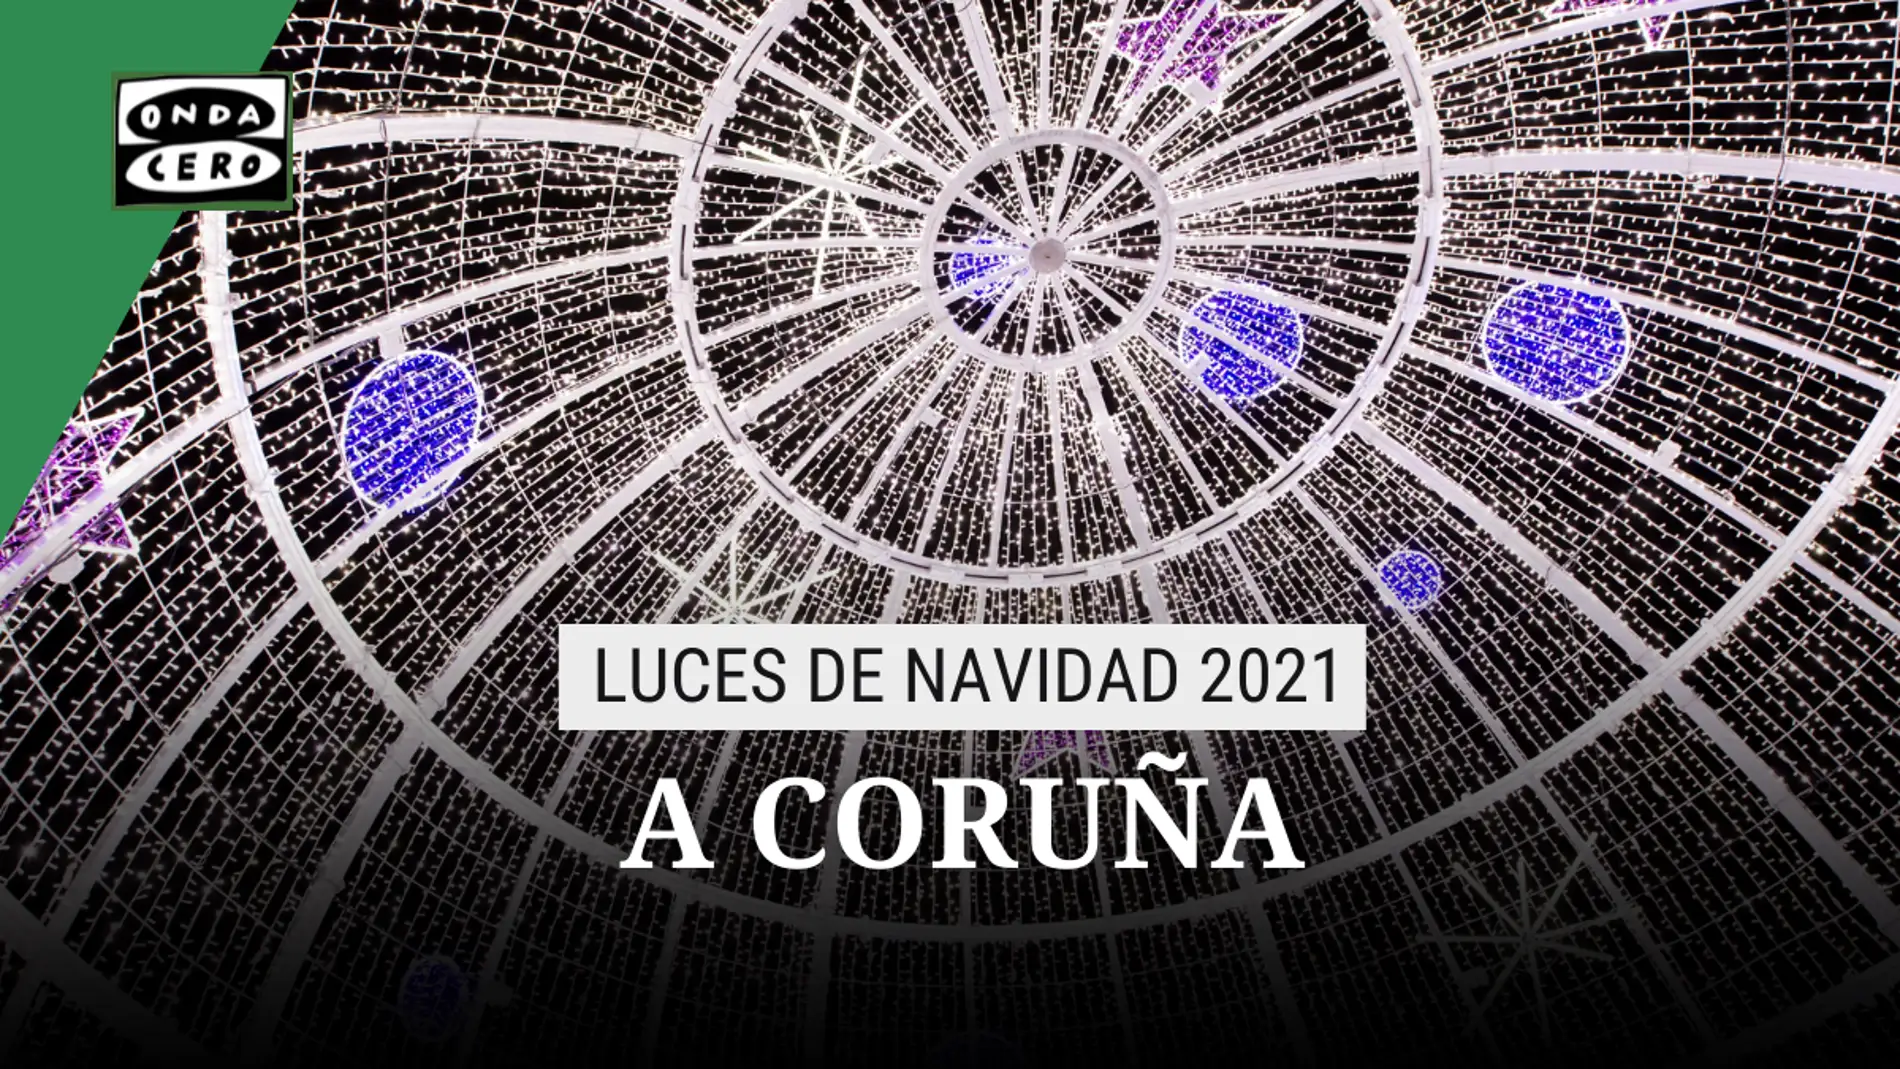 Encendido de luces de Navidad en A Coruña: cuándo es, horario y ubicación